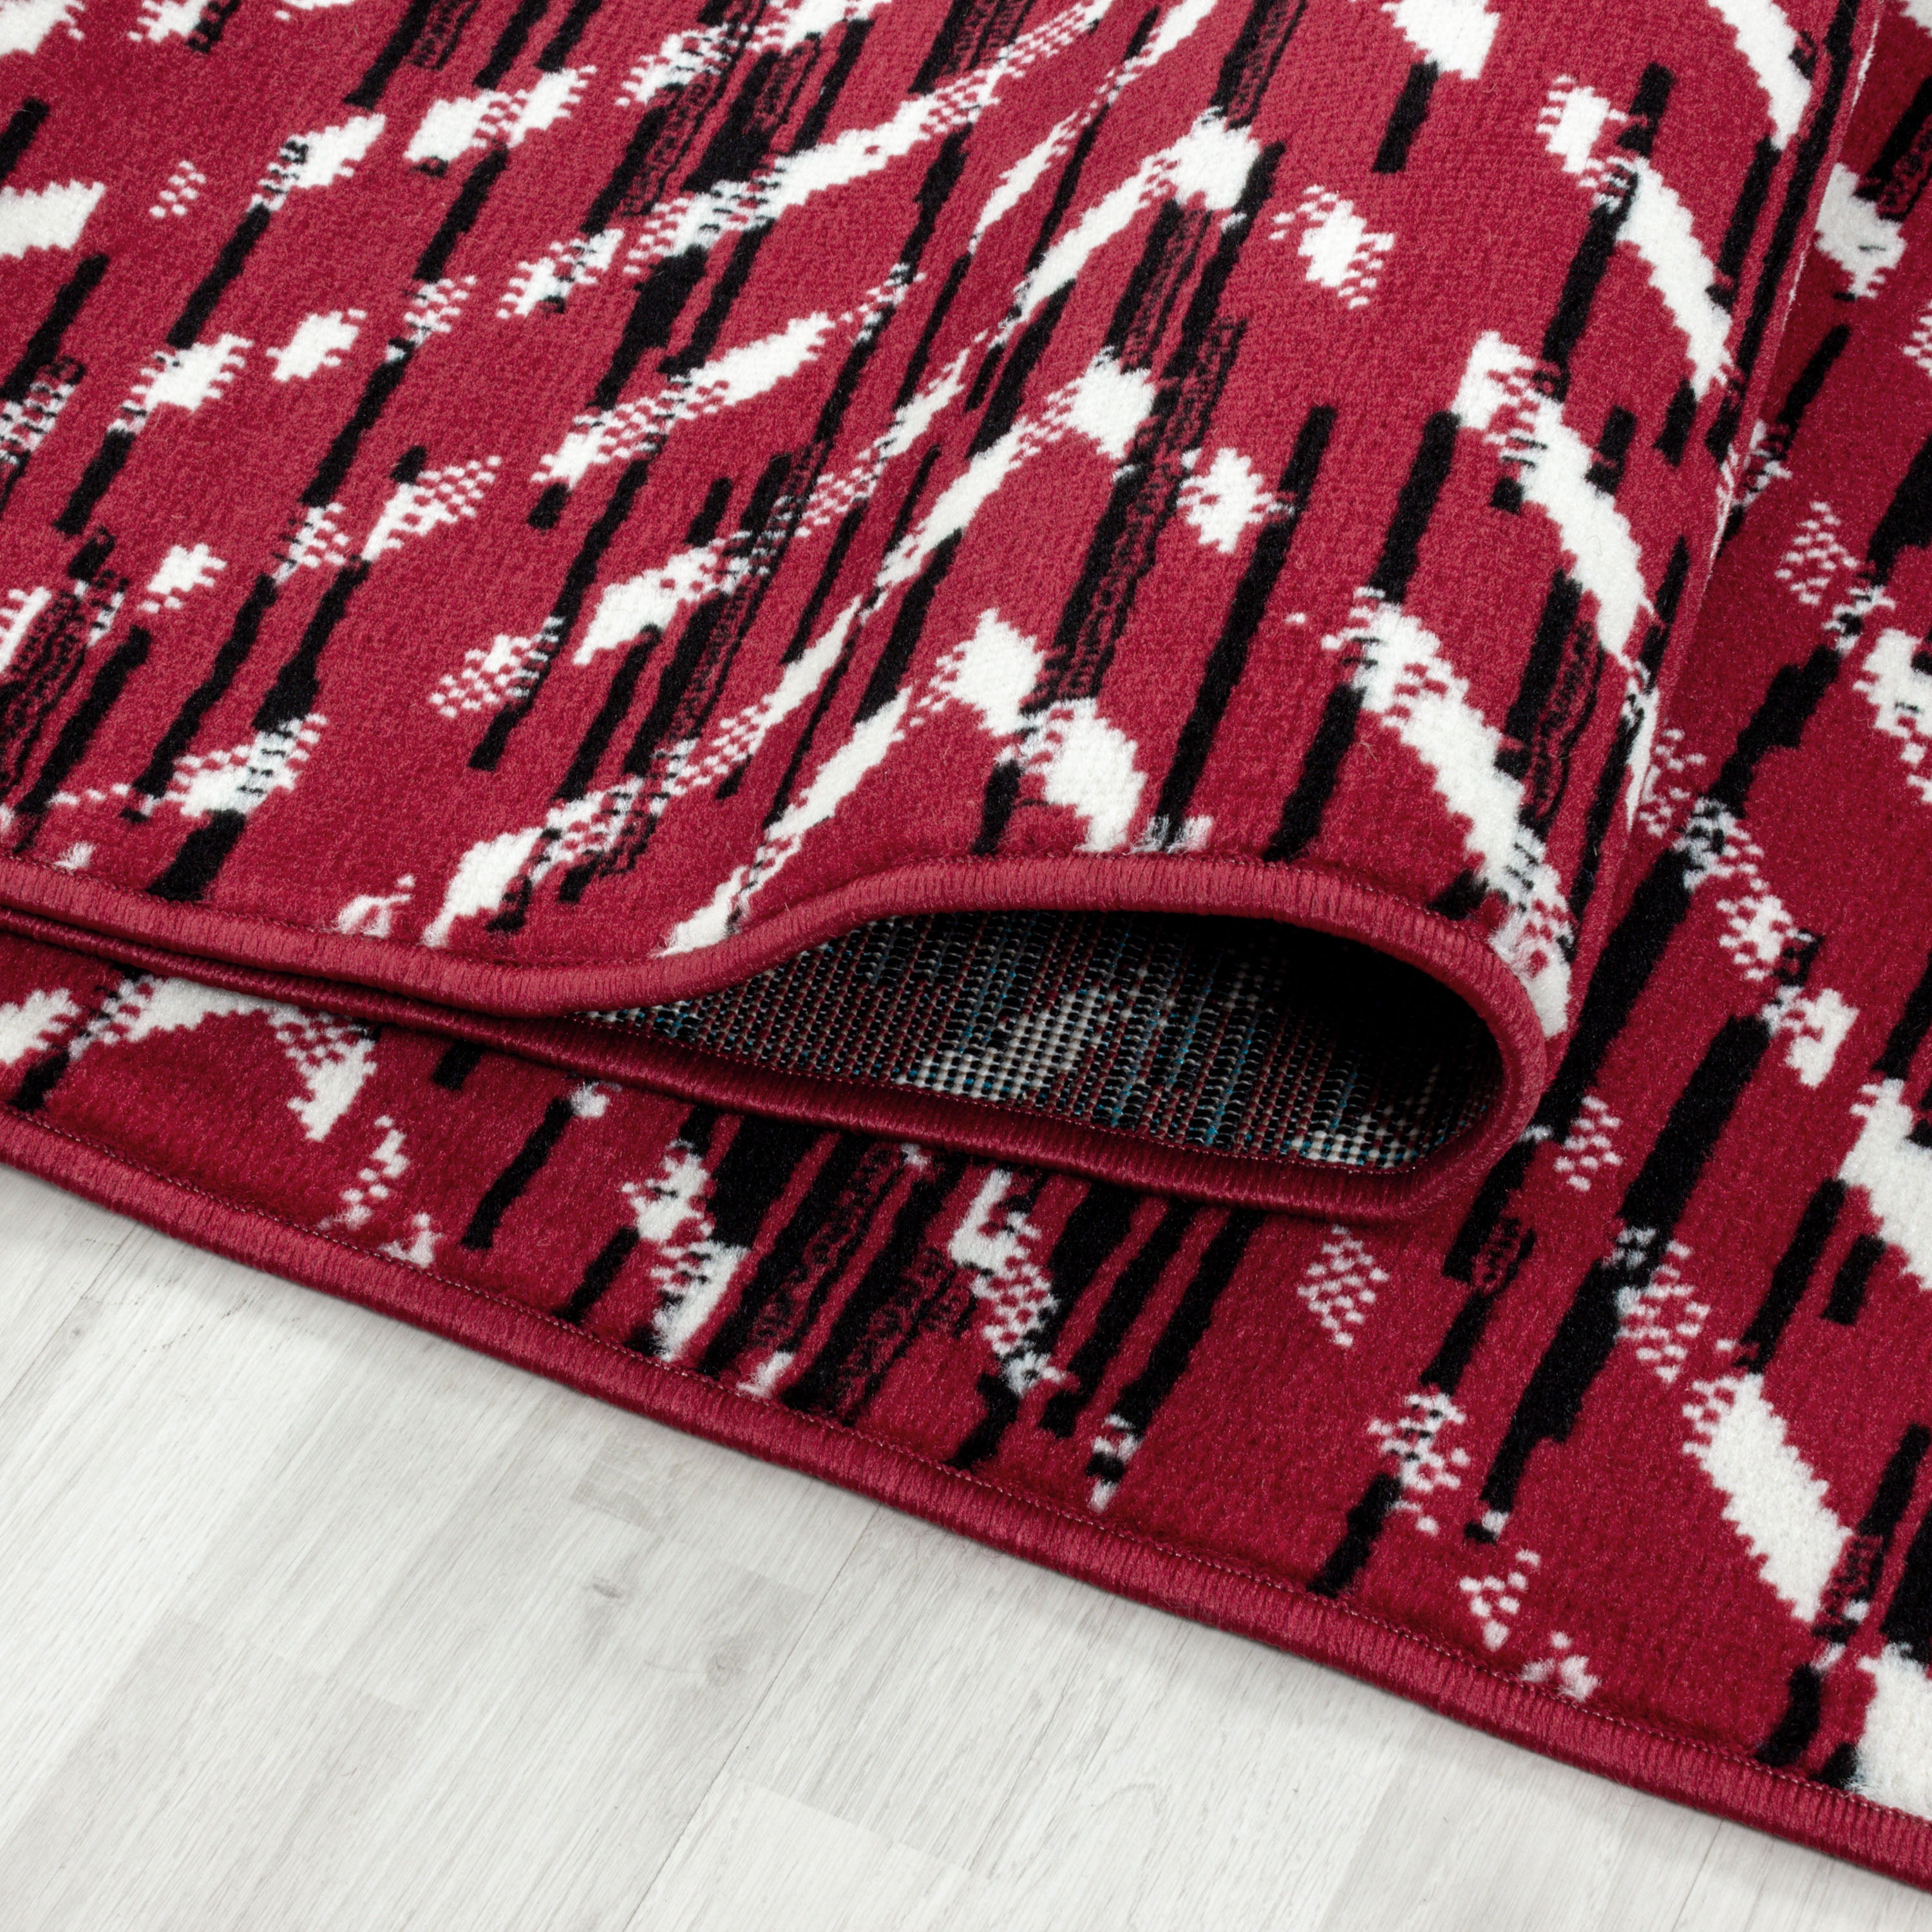 Kurzflor Teppich Modernes Struktur Muster Wohnzimmerteppich Flor Weich Rot